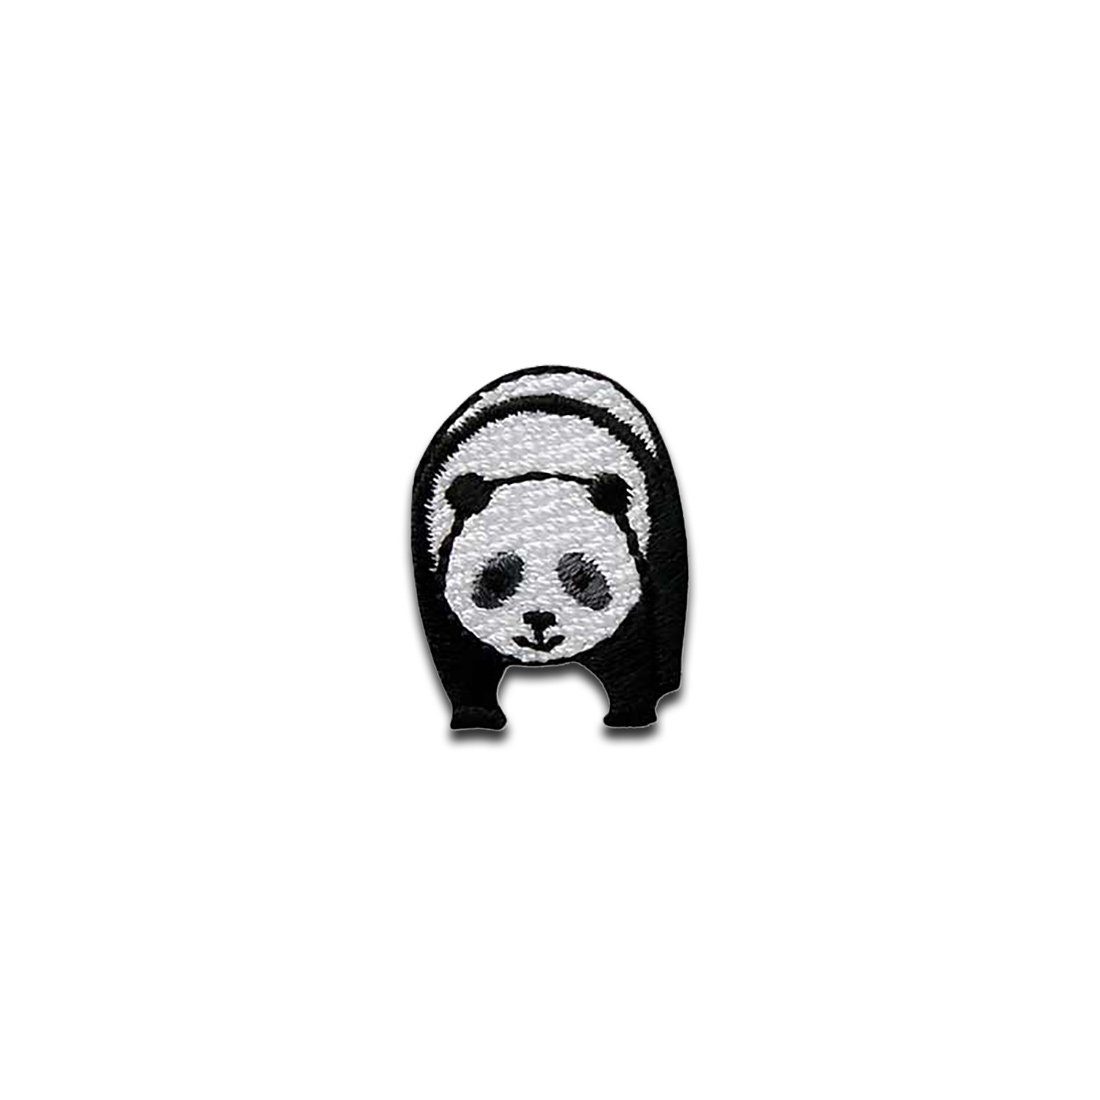 Mono-Quick Aufnäher Bügelbild, Aufbügler, Applikationen, Patches, Flicken, zum aufbügeln, Polyester, Panda klein Tier Kinder - Größe: 2,3 x 1,7 cm